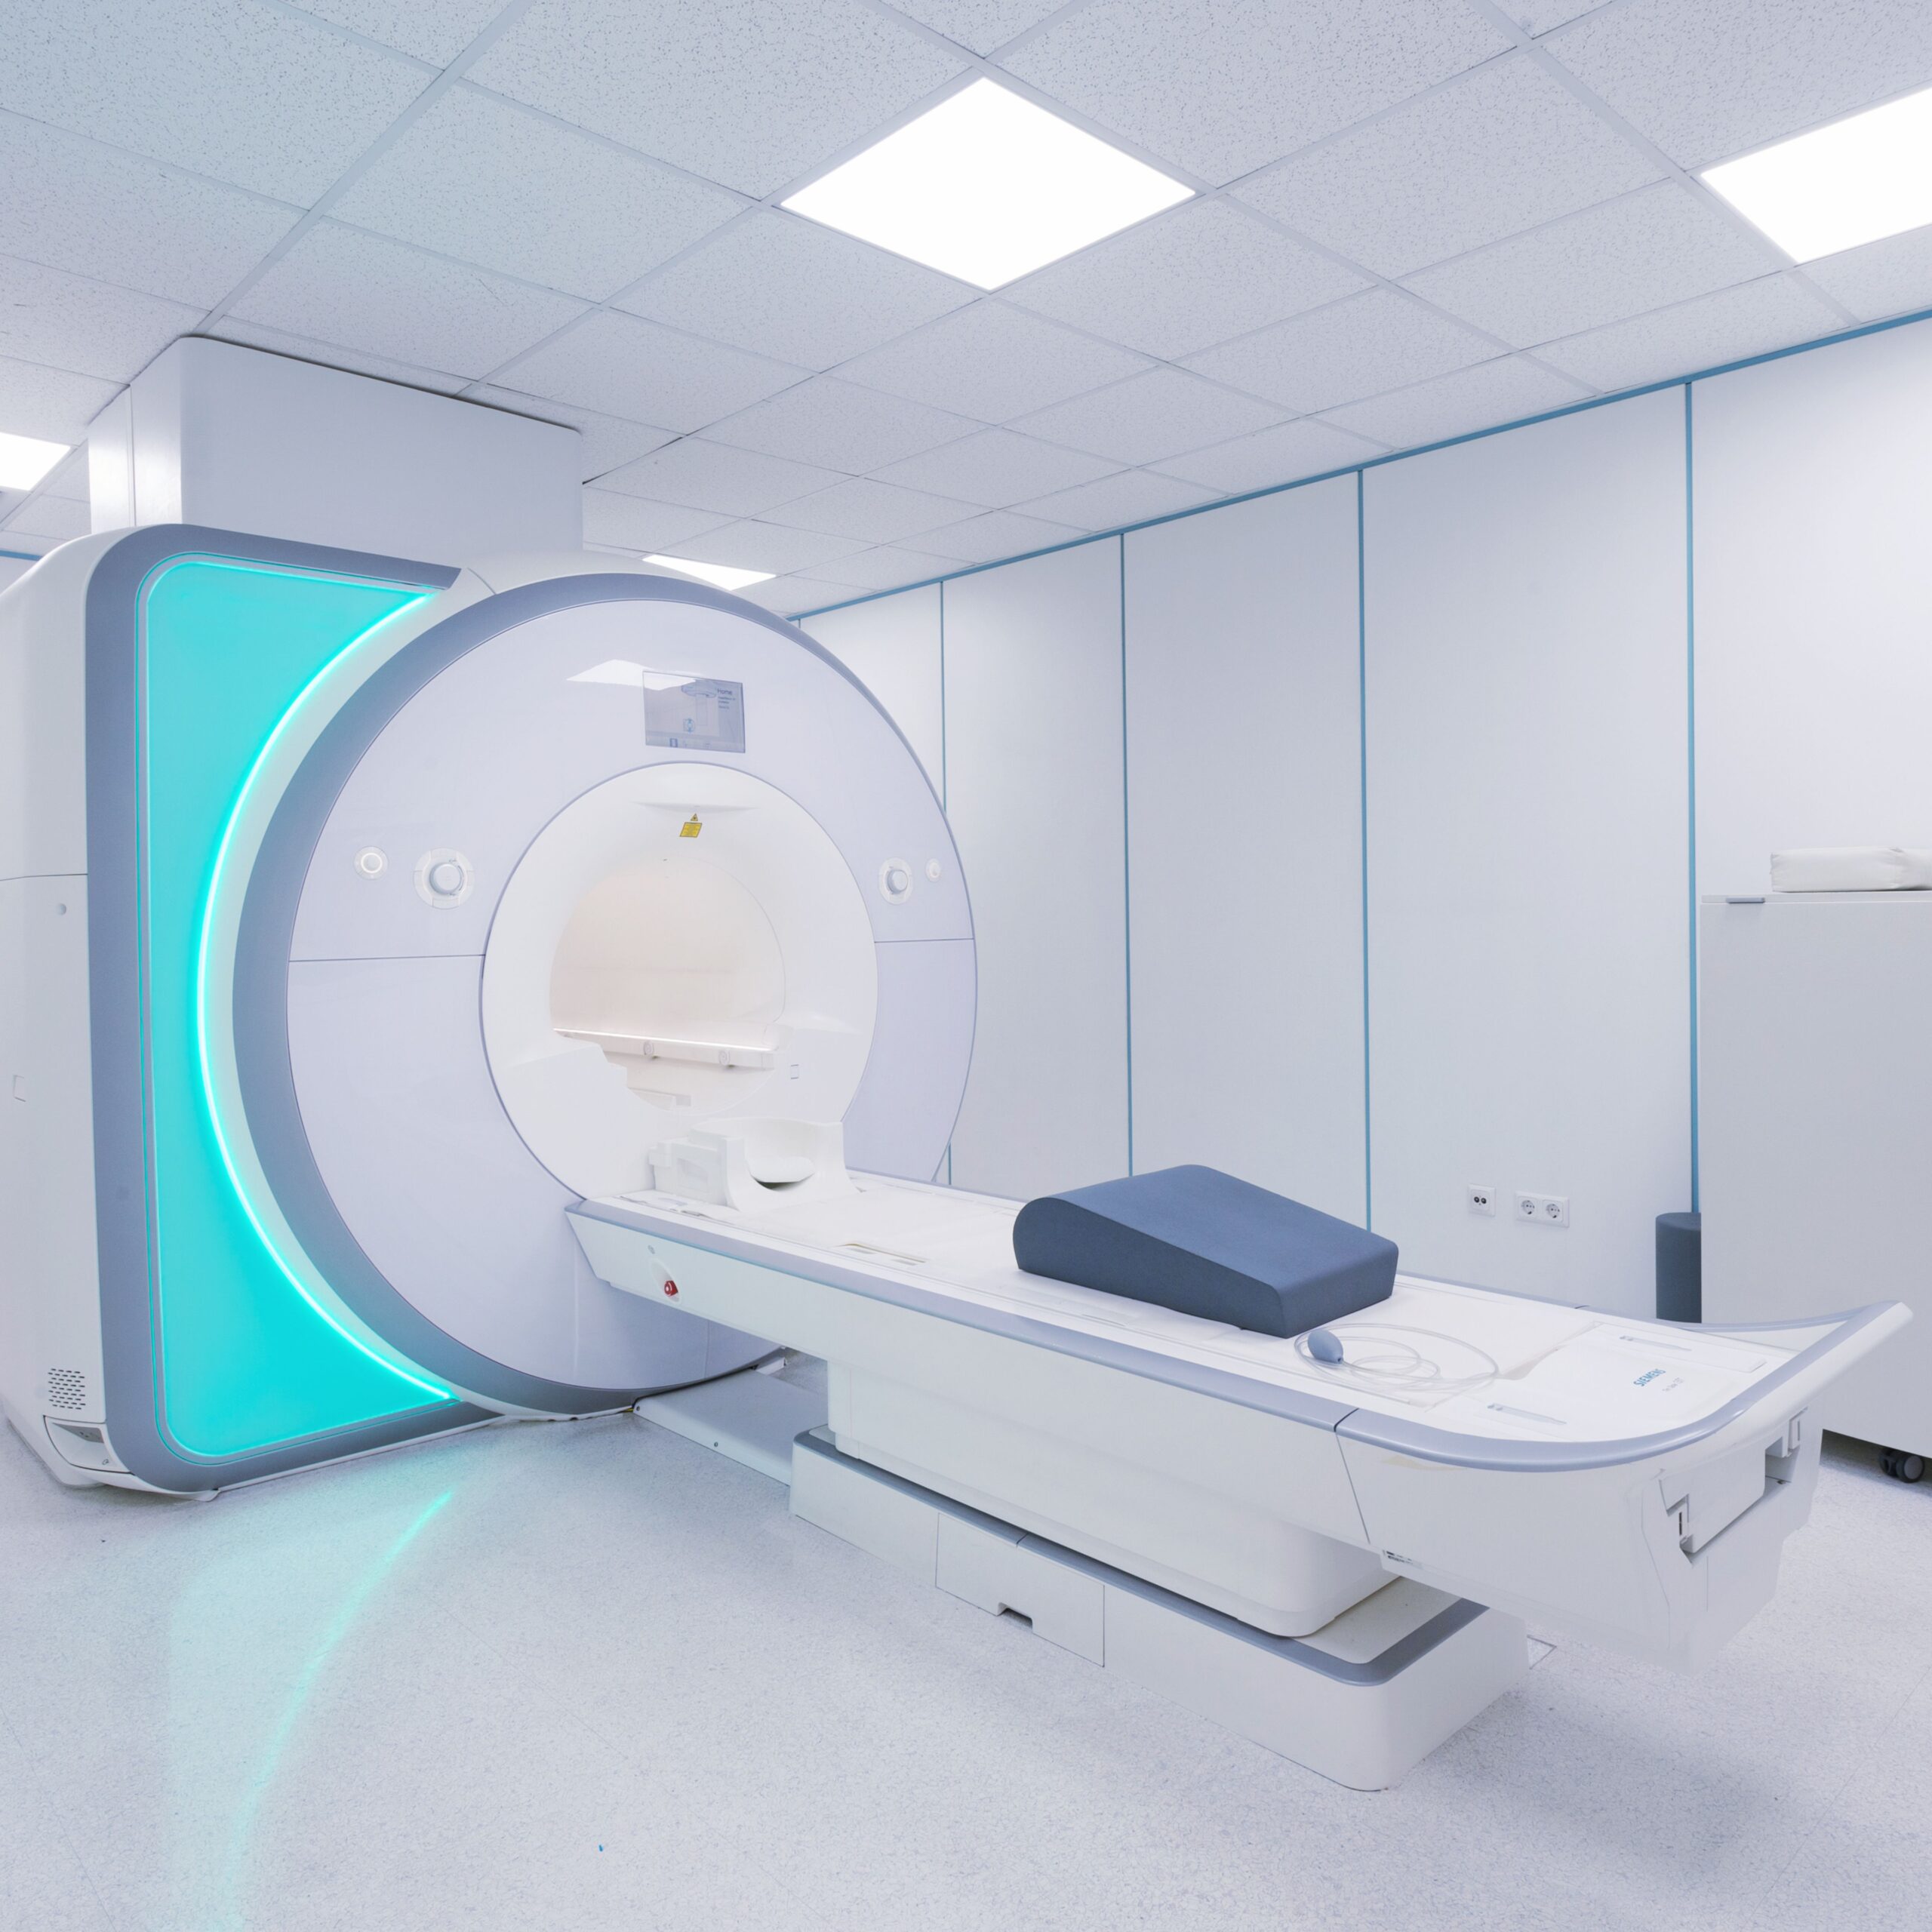 mmc - private CT, MRI and medical imaging